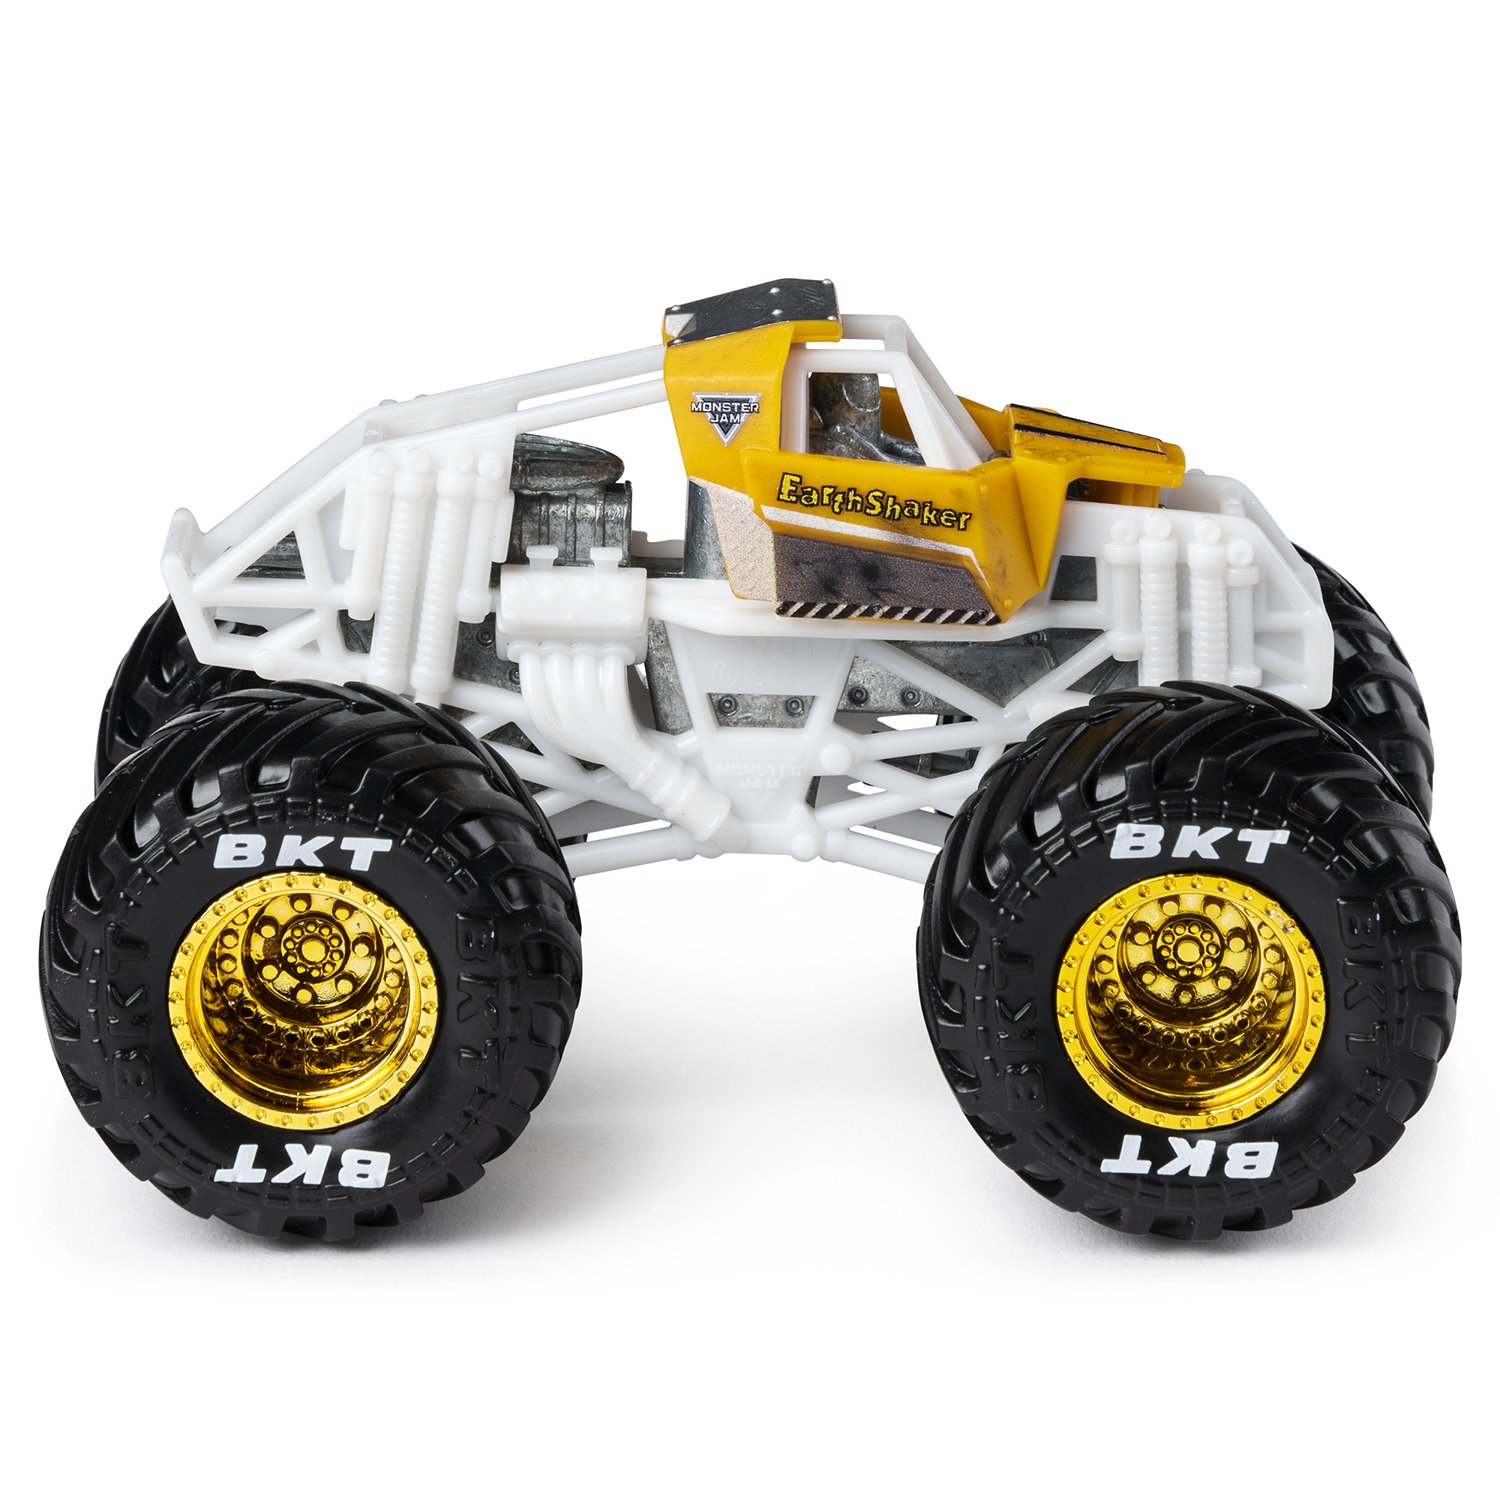 earthshaker monster truck toy